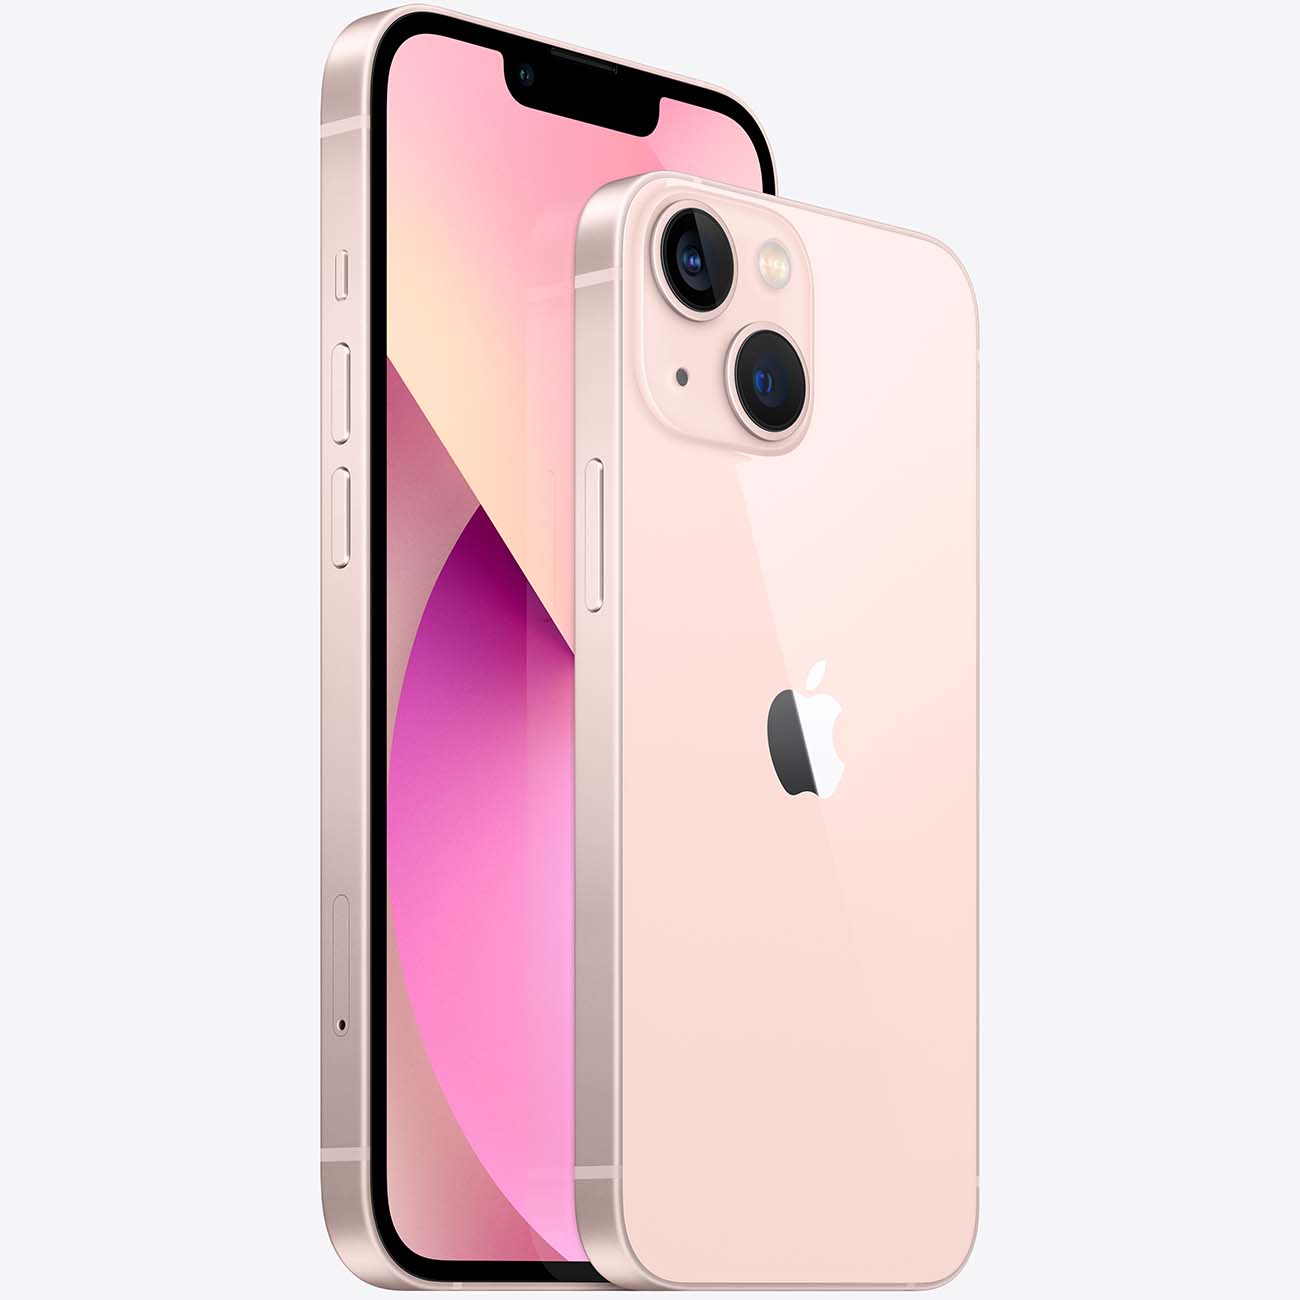 Купить смартфон apple iphone 13 mini 128gb pink Apple iPhone 13 mini в официальном магазине Apple, Samsung, Xiaomi. iPixel.ru Купить, заказ, кредит, рассрочка, отзывы,  характеристики, цена,  фотографии, в подарок.